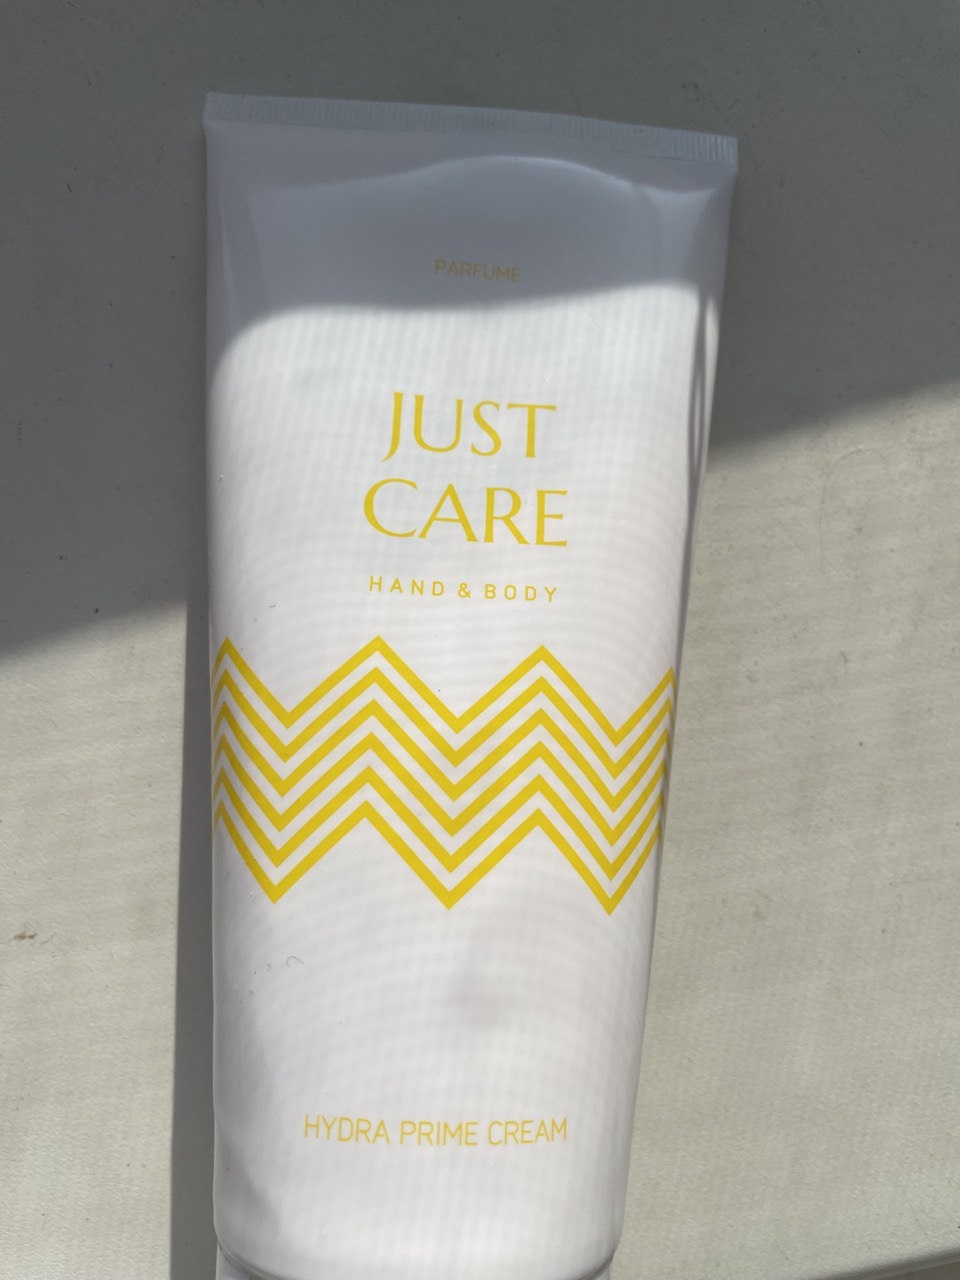 Just Care - Hydra prime parfume cream